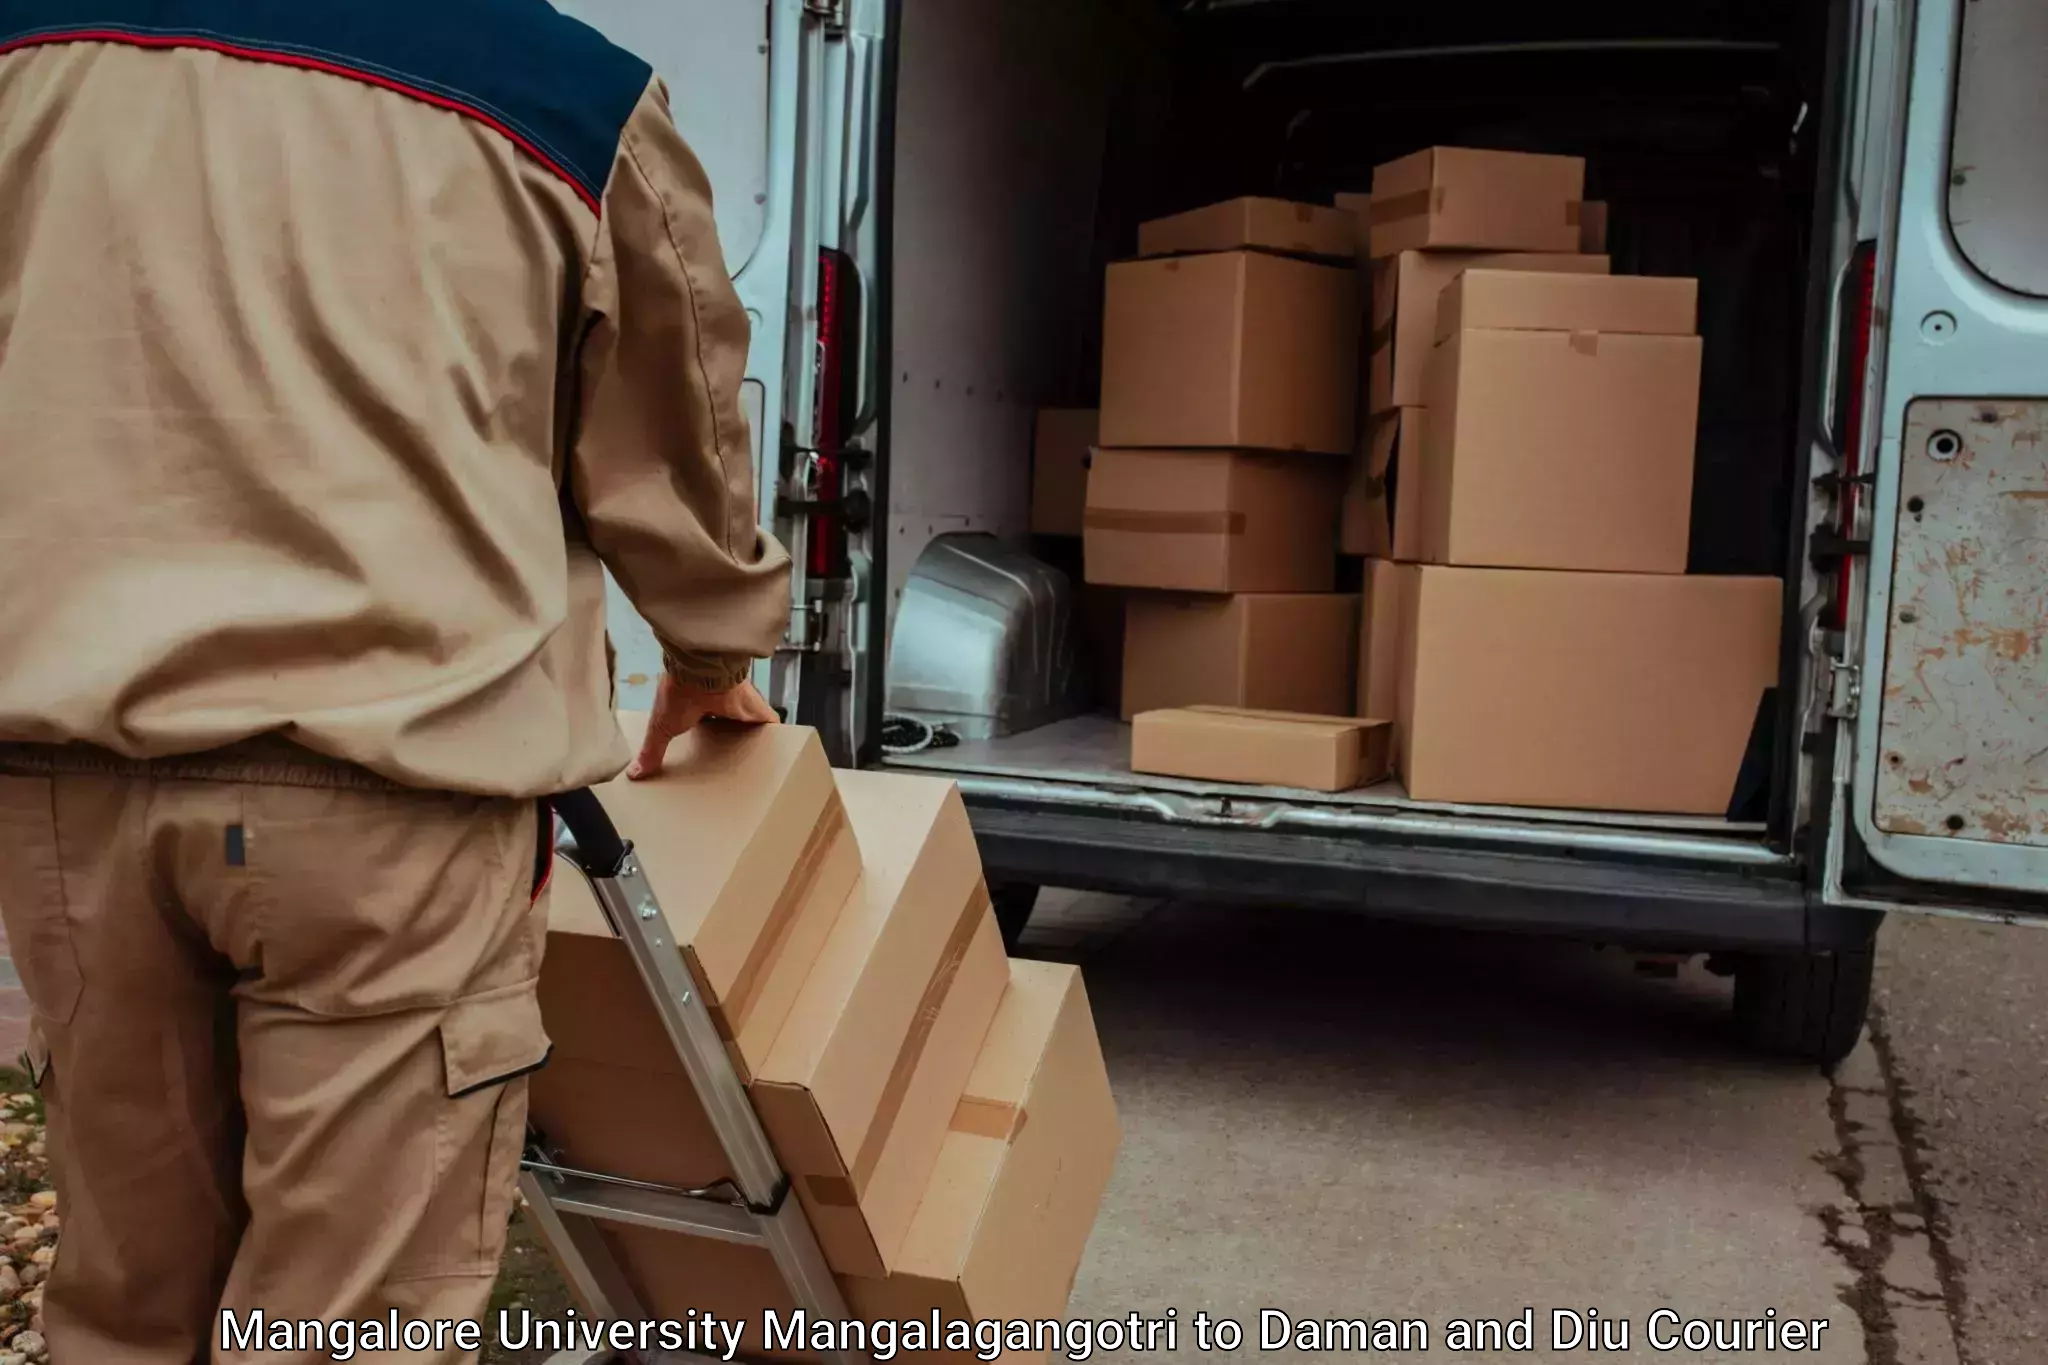 Efficient luggage delivery Mangalore University Mangalagangotri to Diu